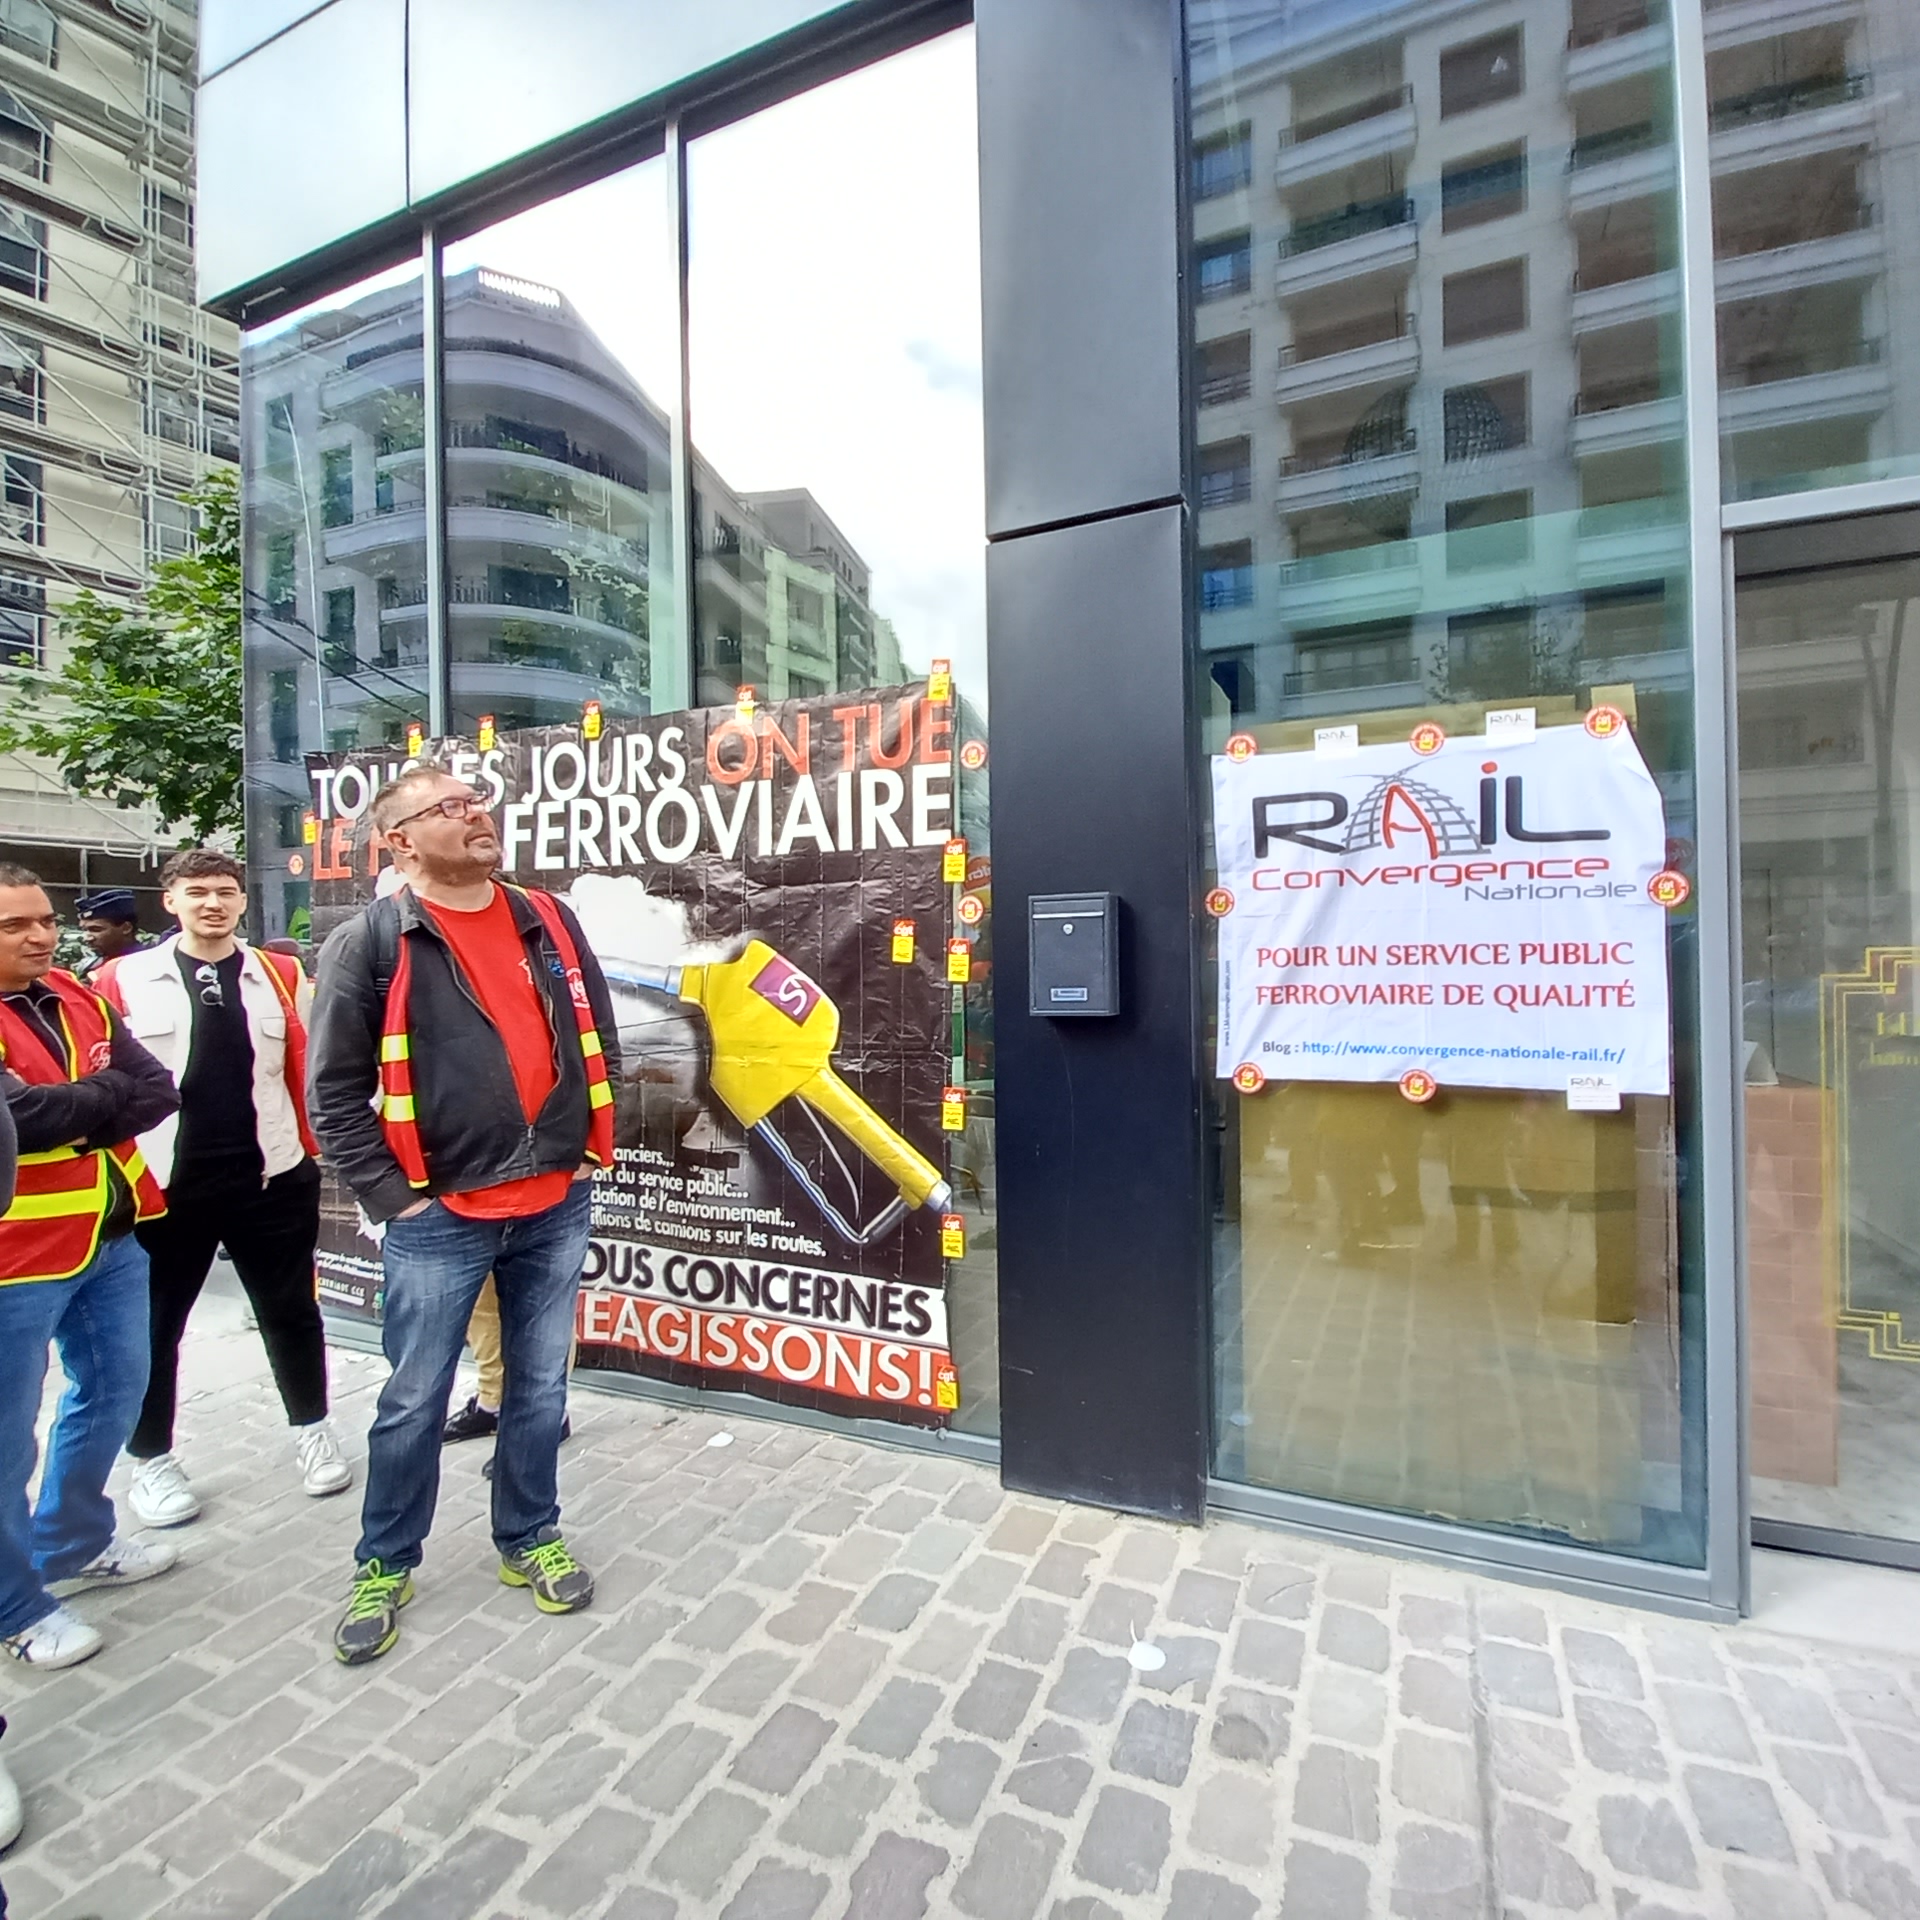 Le 2 juin dernier, rassemblement au siège de Fret SNCF contre le démantèlement de l'entreprise publique